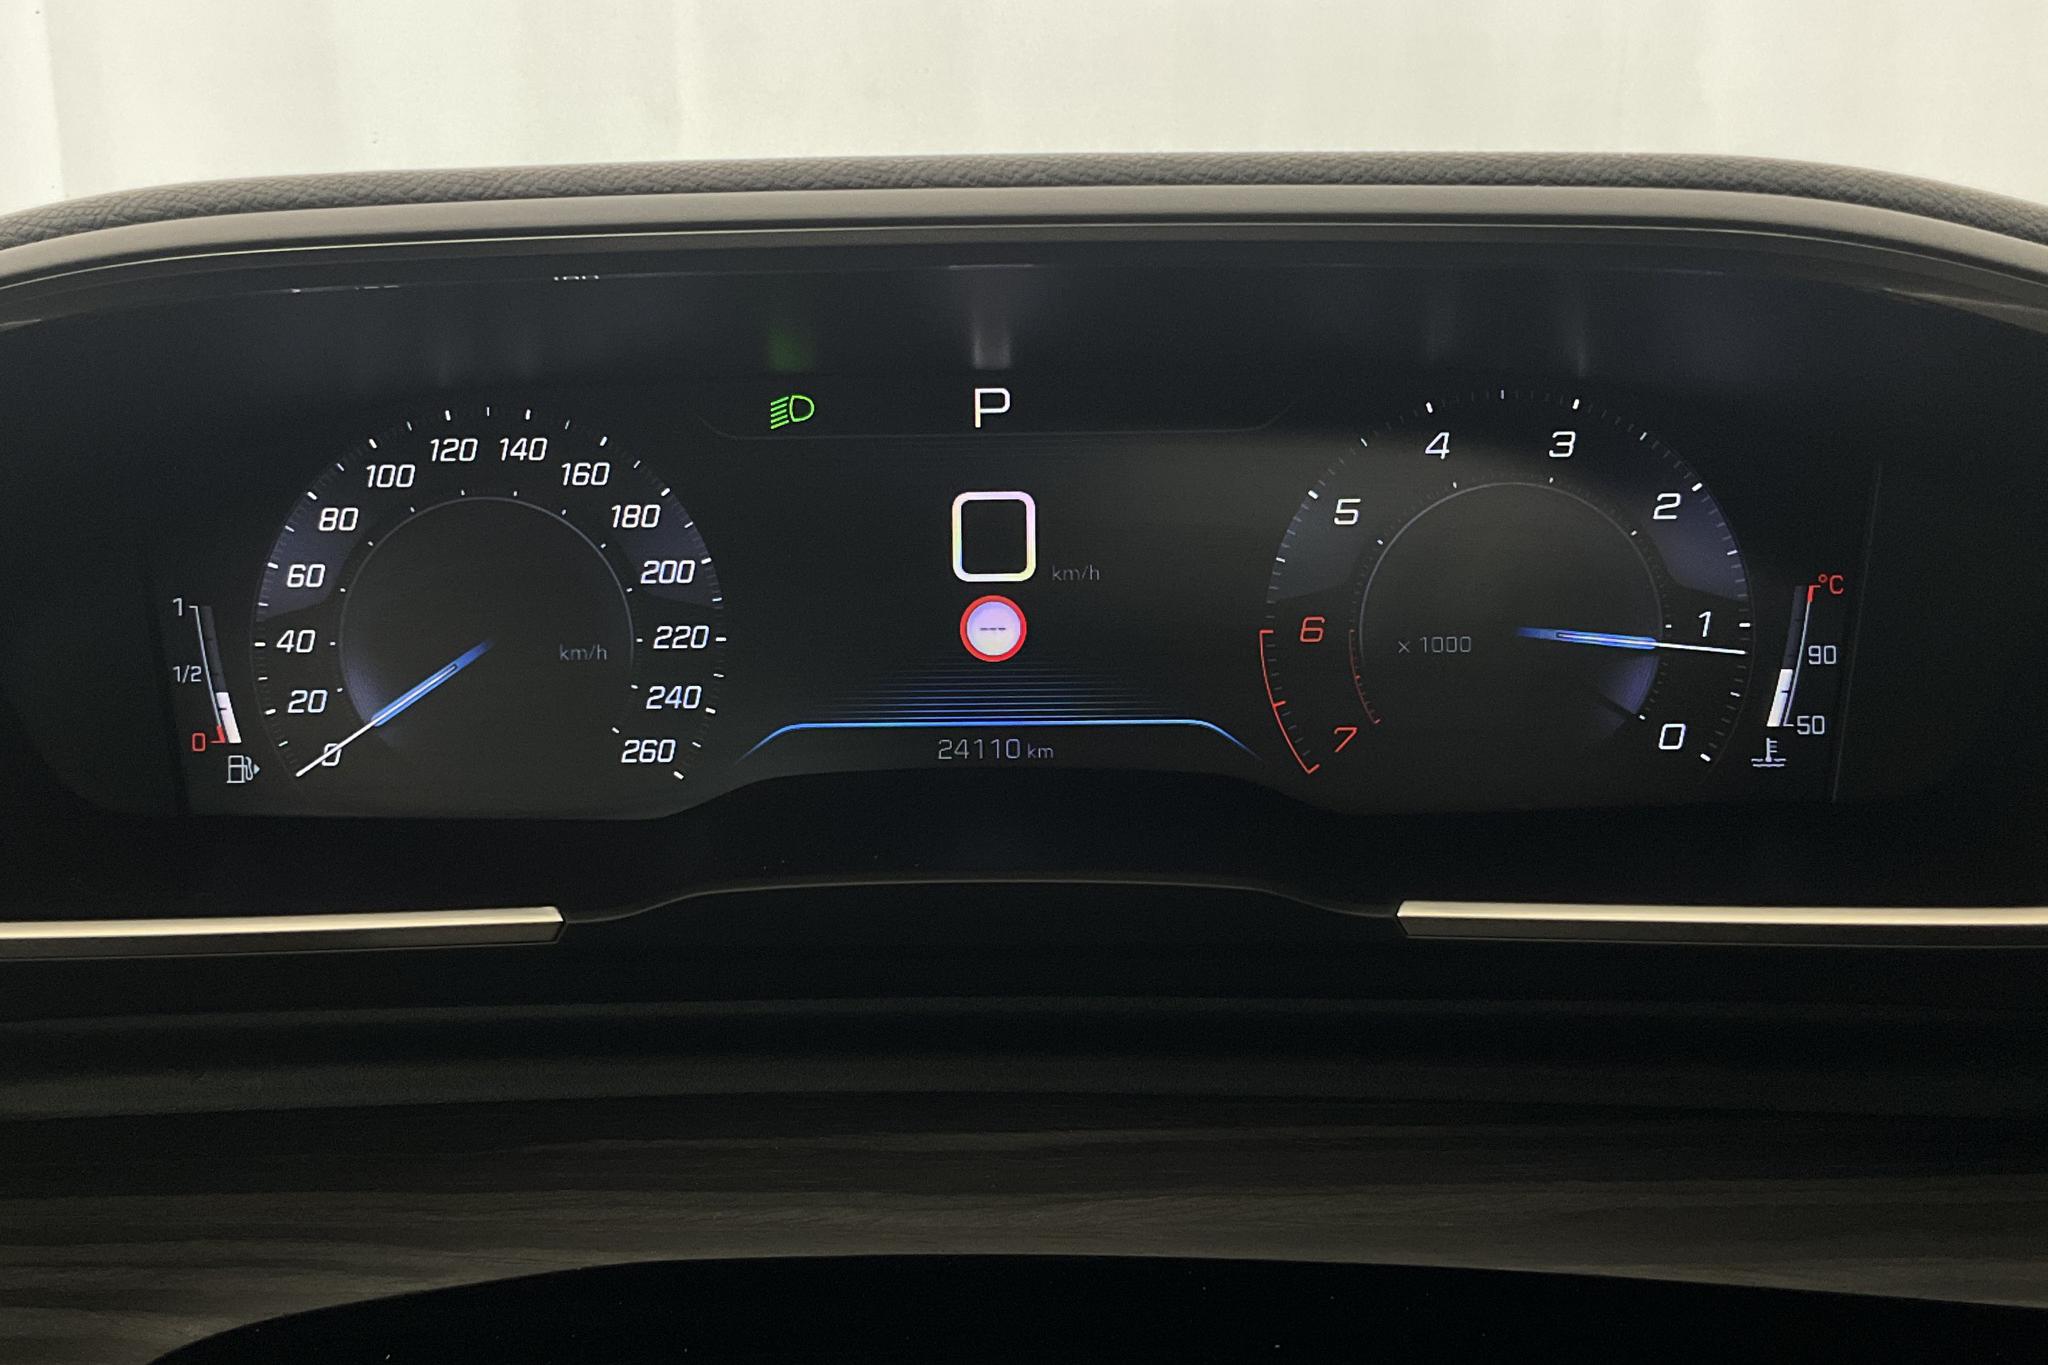 Peugeot 508 1.6 PureTech 5dr (225hk) - 24 110 km - Automatic - 2019